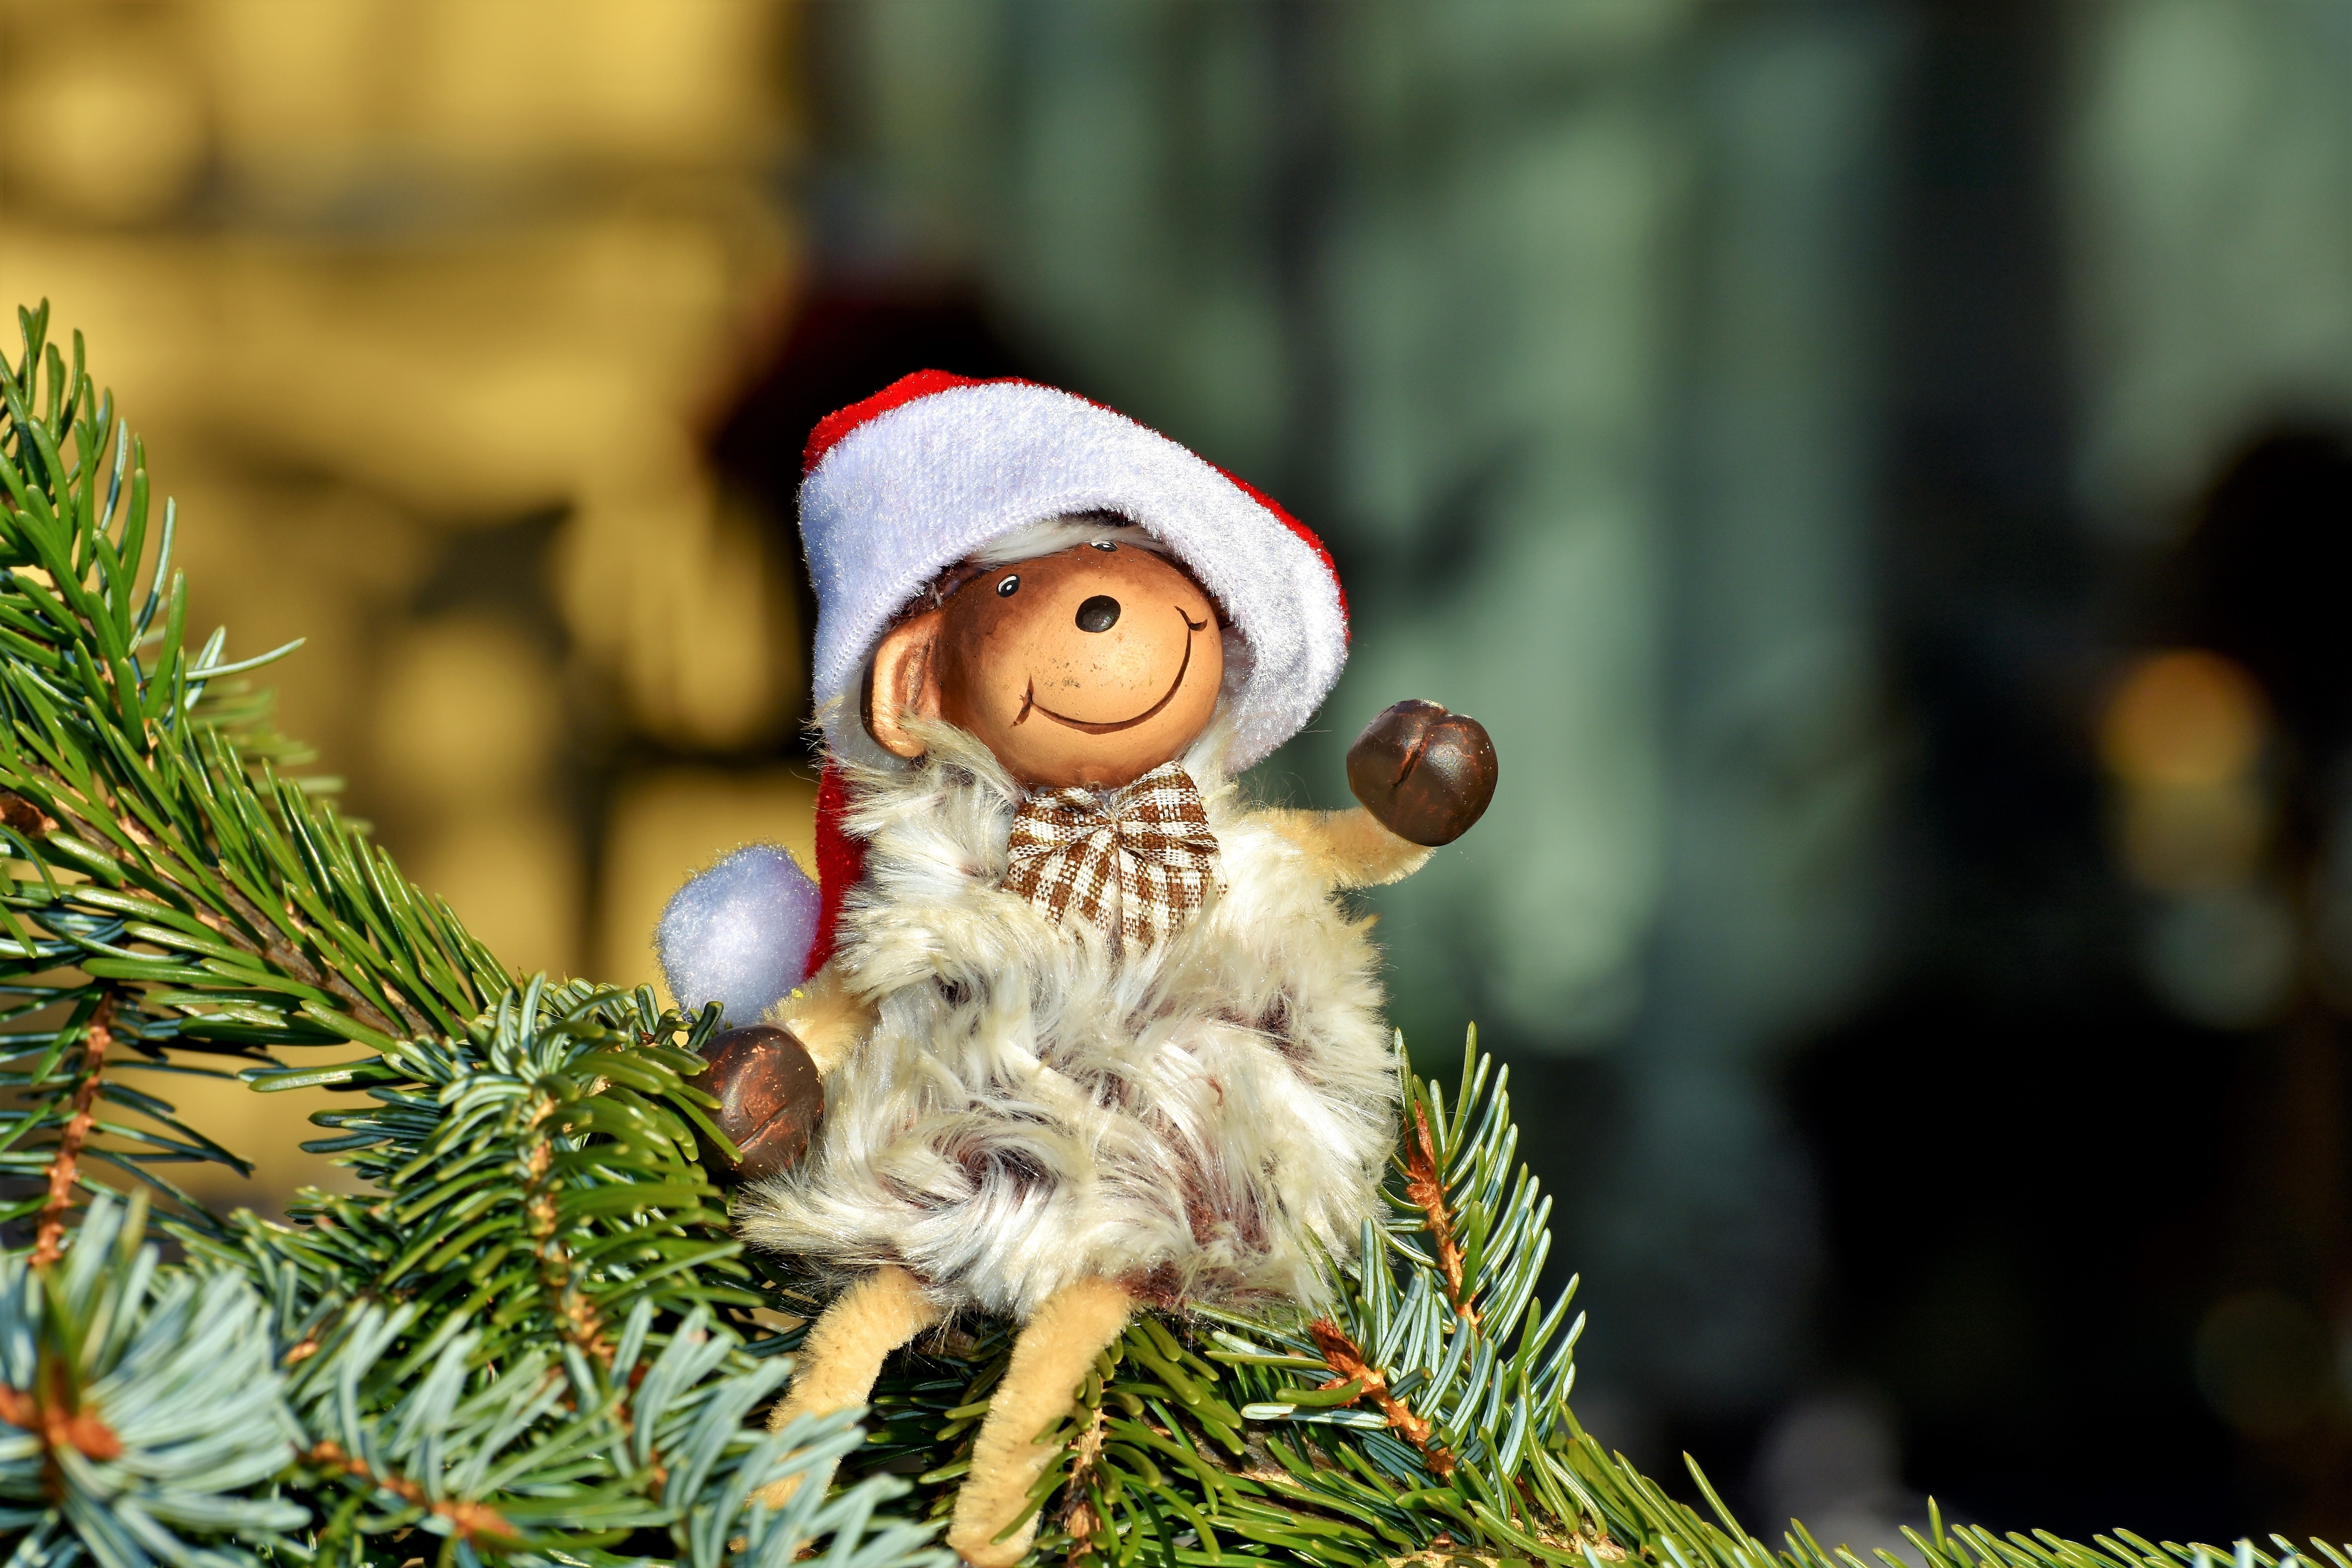 Fondos de Pantalla Navidad, Decoración de la Navidad, Santa Claus,  Nochevieja, Ded Moroz, Imágenes y Fotos Gratis